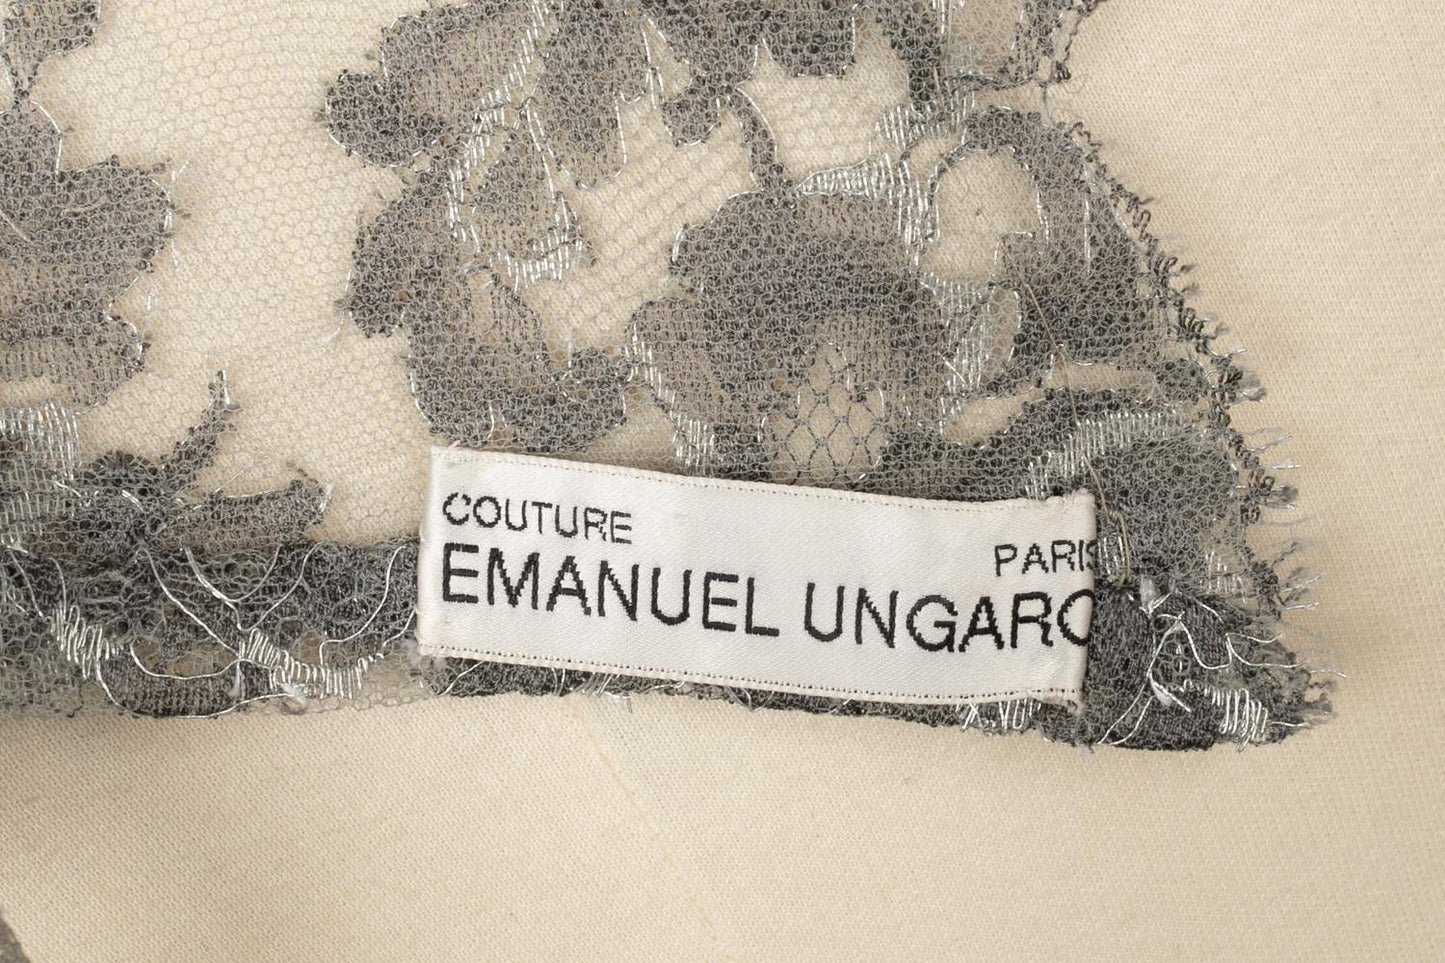 Ensemble Ungaro Couture 1999